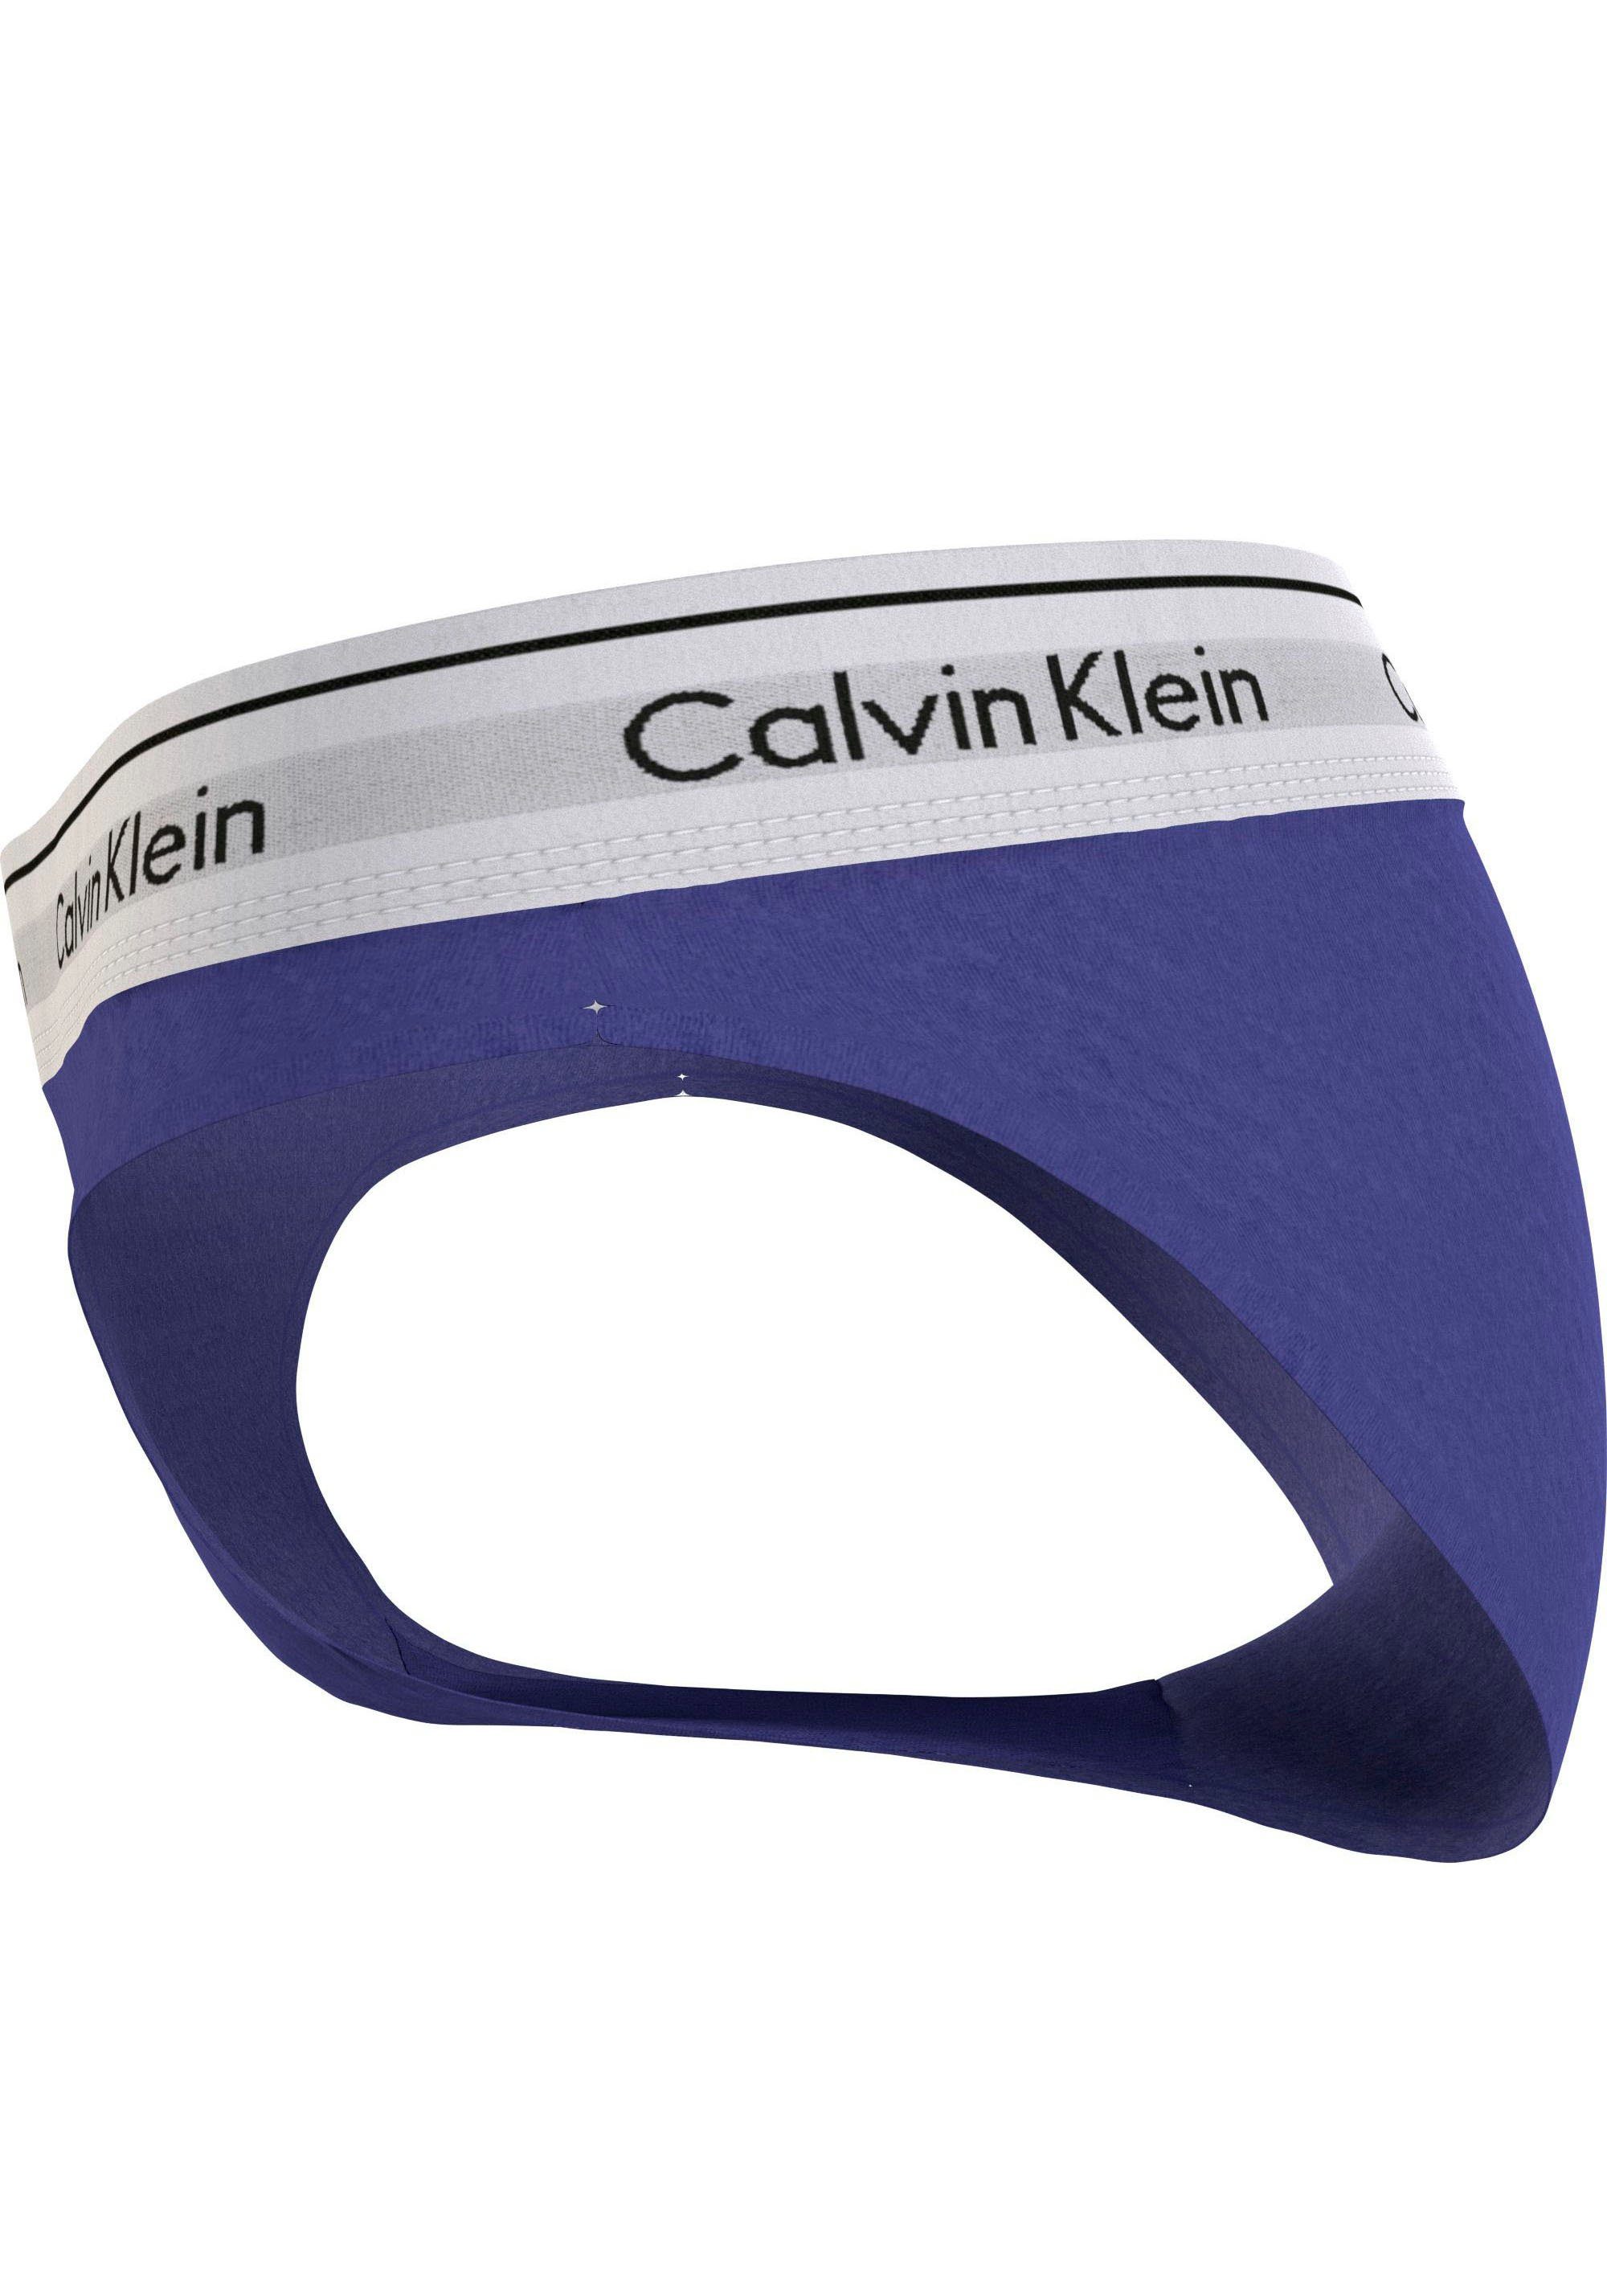 Calvin Klein Underwear Bikinislip BIKINI blau klassischem mit Logo